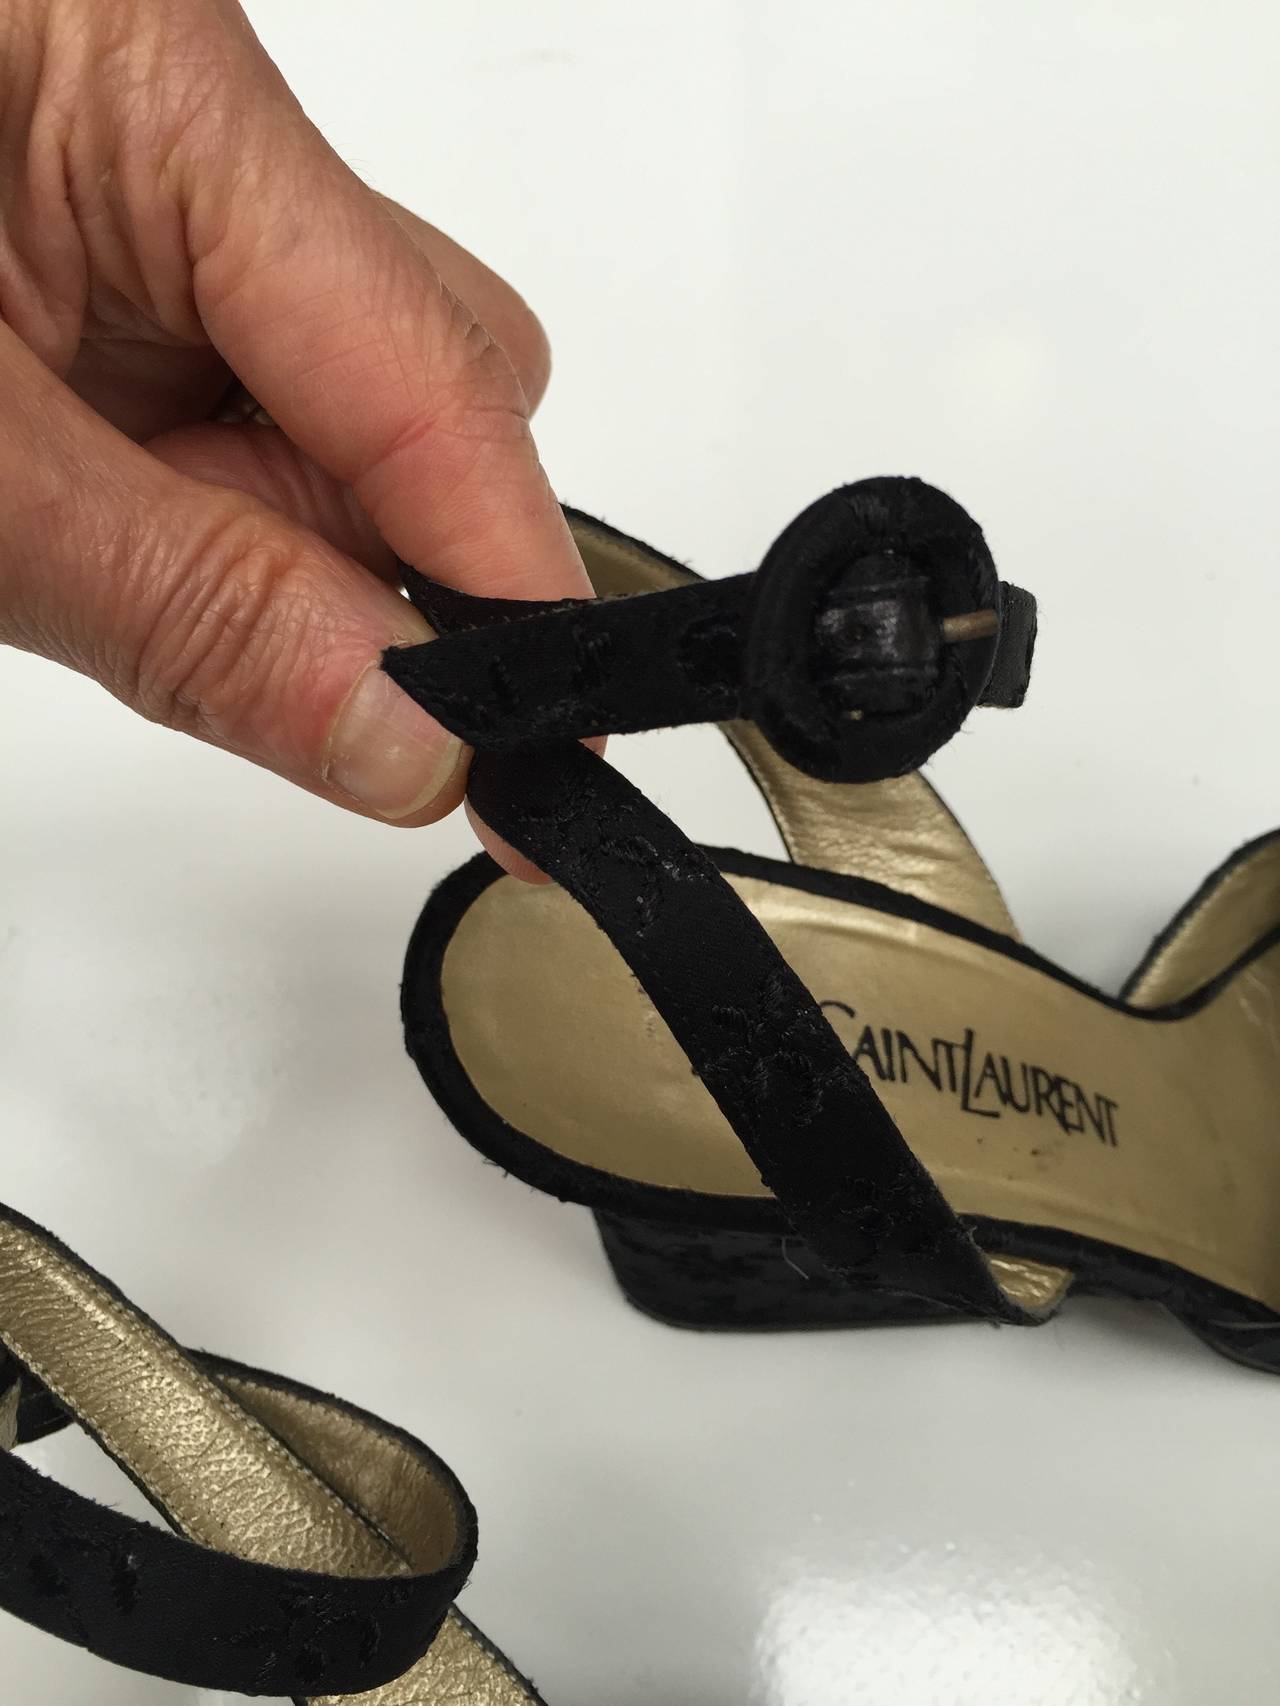 Yves Saint Laurent 1980s Black Ankle Strap Shoes Size 7.5 M. For Sale 2